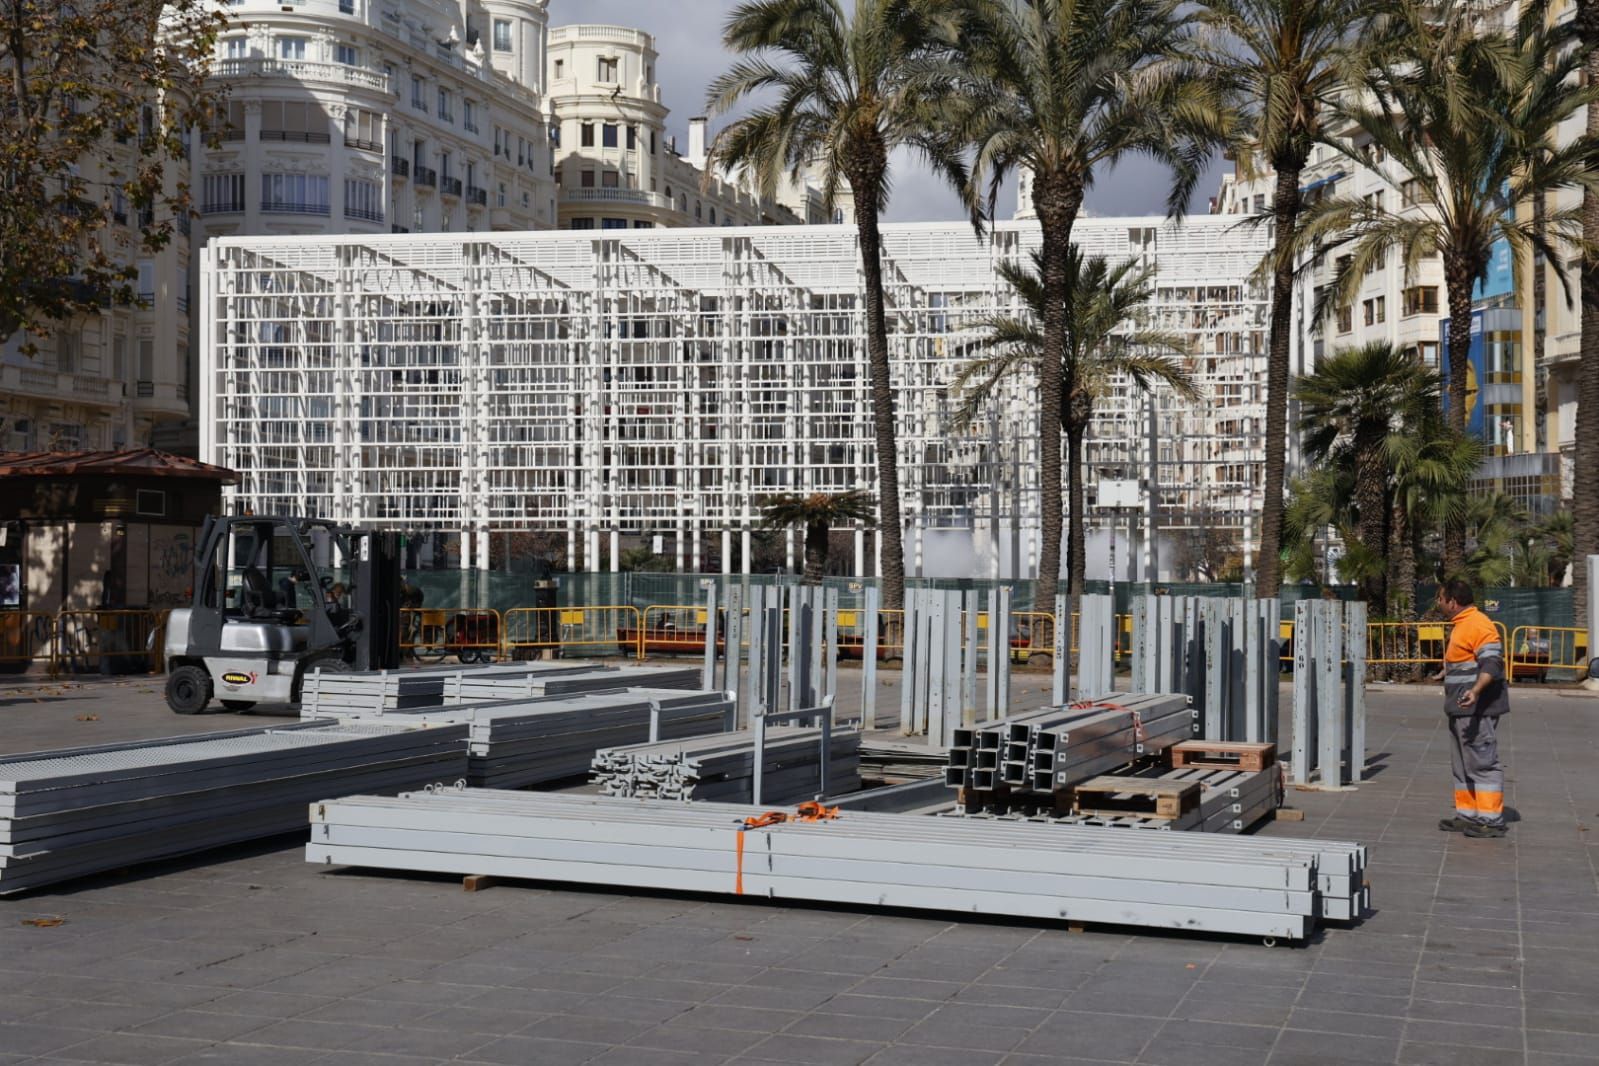 La jaula de la mascletà coge músculo en la plaza del Ayuntamiento